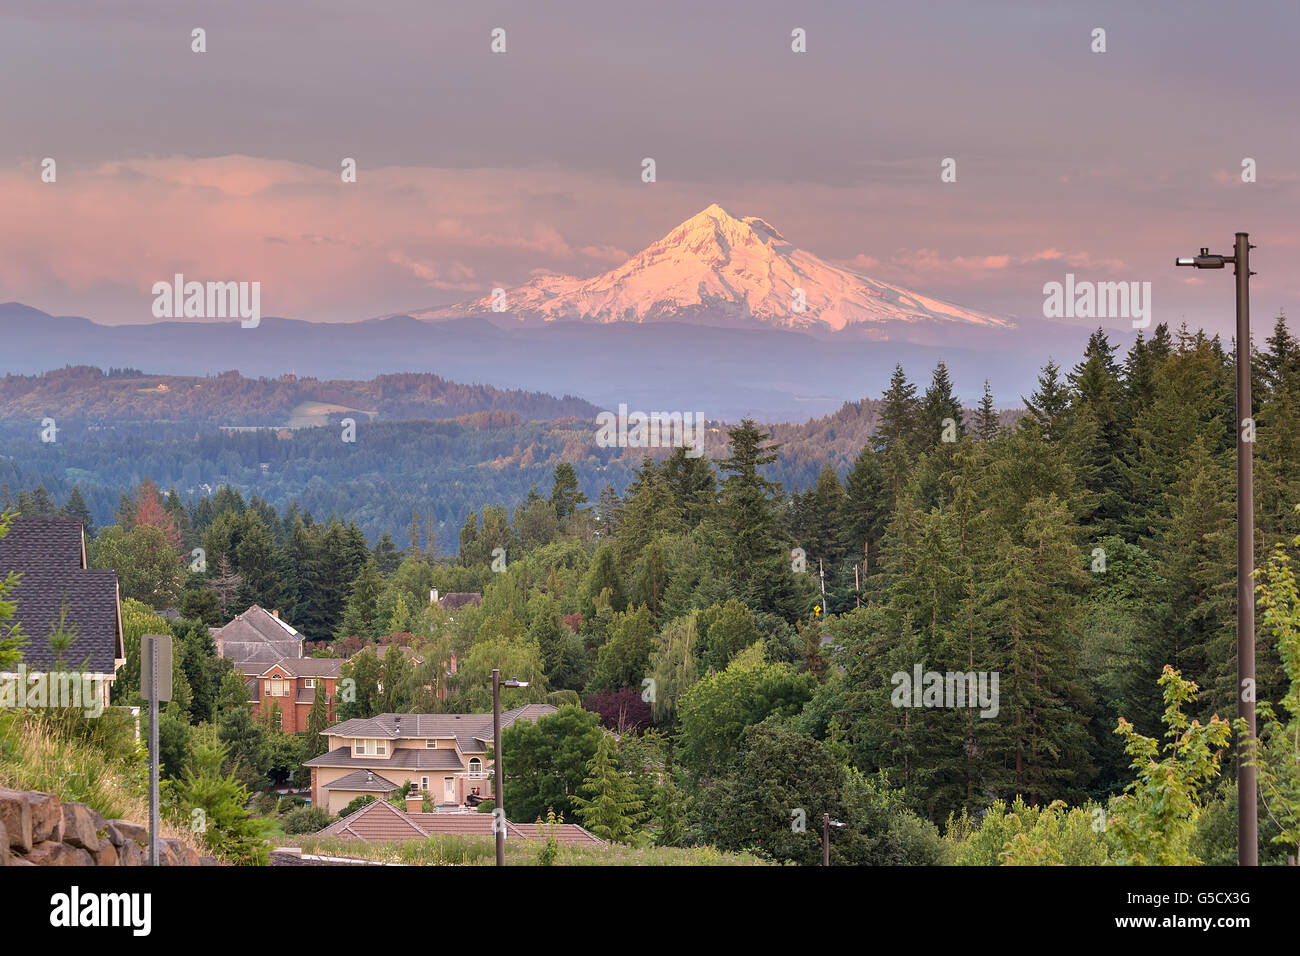 Mount Hood soir alpenglow pendant le coucher du soleil de Happy Valley Oregon quartier résidentiel de Clackamas Comté Banque D'Images